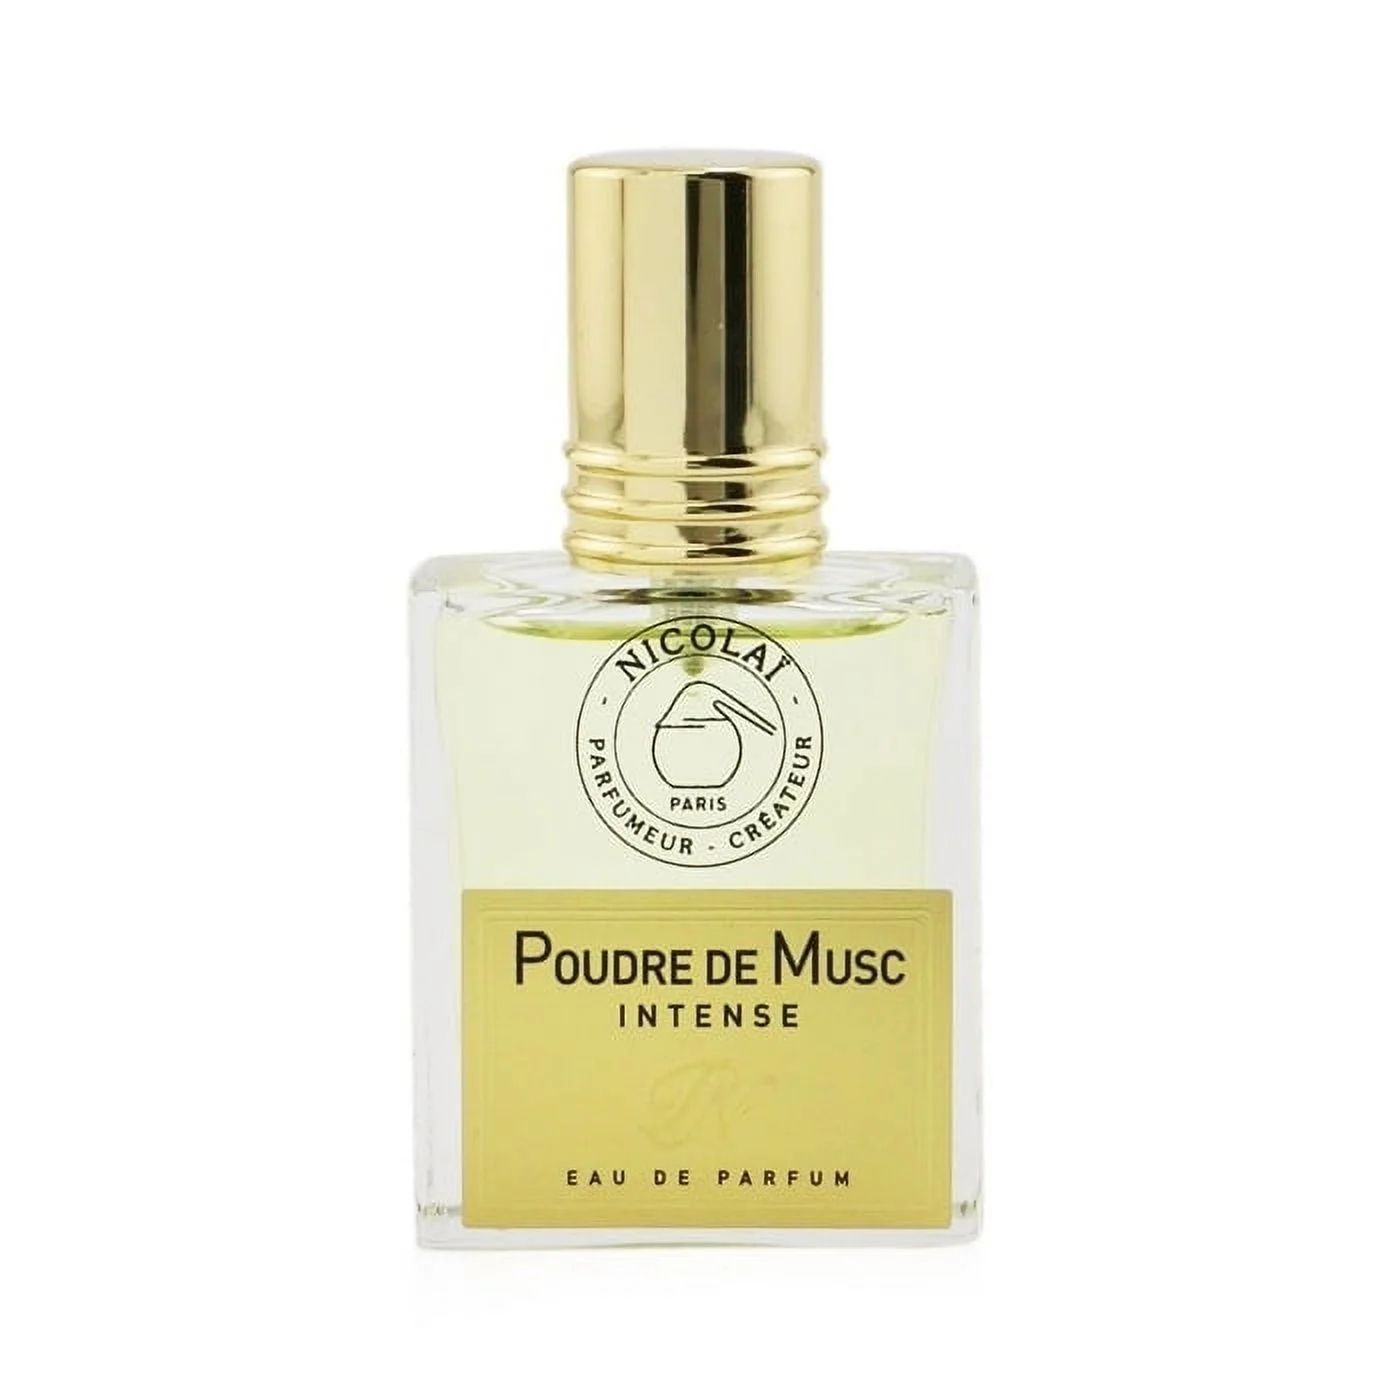 Nicolai Poudre De Musc Intense Eau De Parfum Spray 30ml/1oz | Walmart (US)